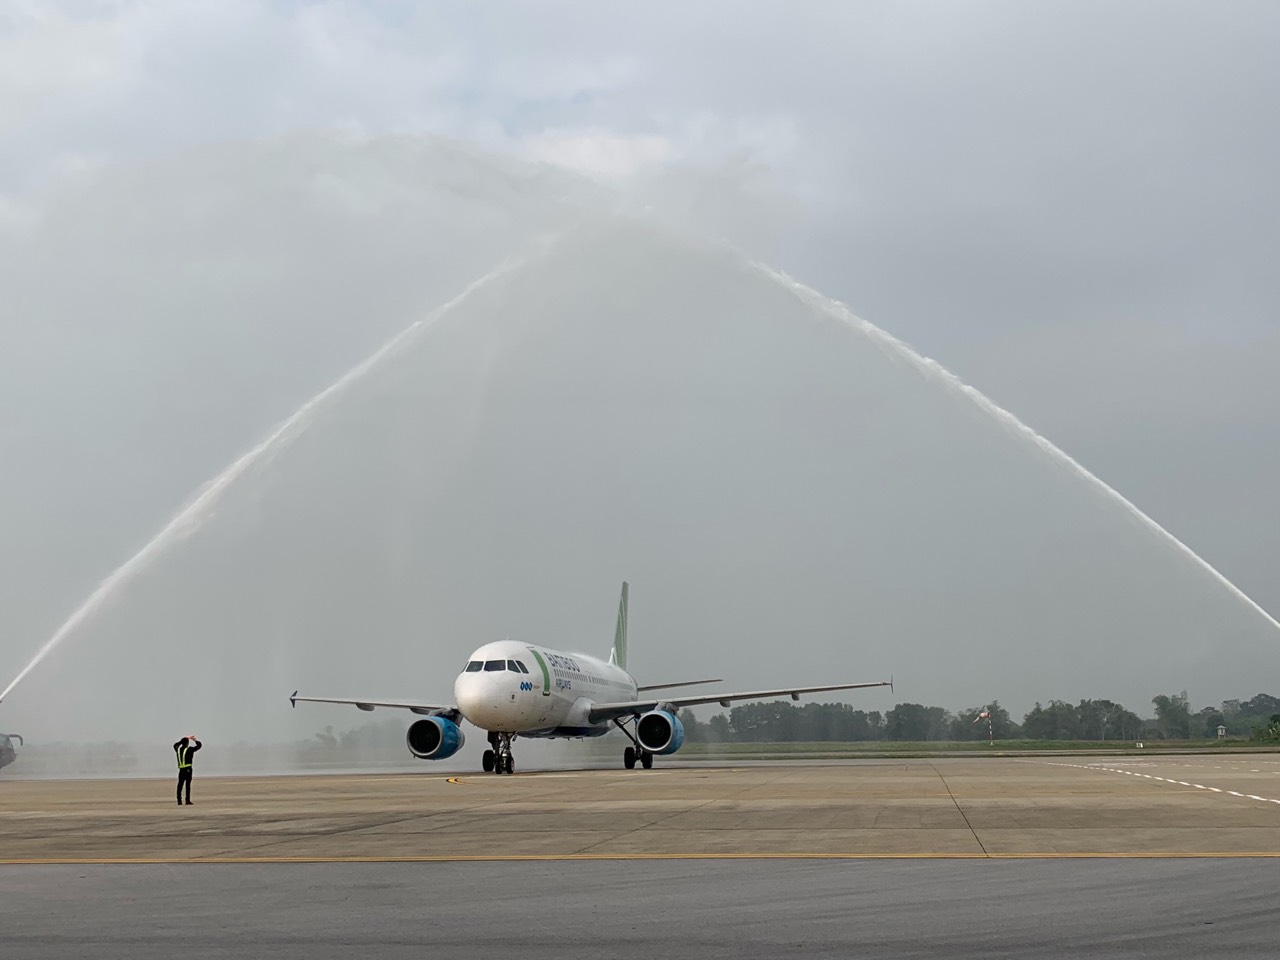 Ngay sau TP HCM - Thanh Hóa, Bamboo Airways mở tiếp đường bay mới TP HCM - Vân Đồn, giá vé từ 149.000 đồng